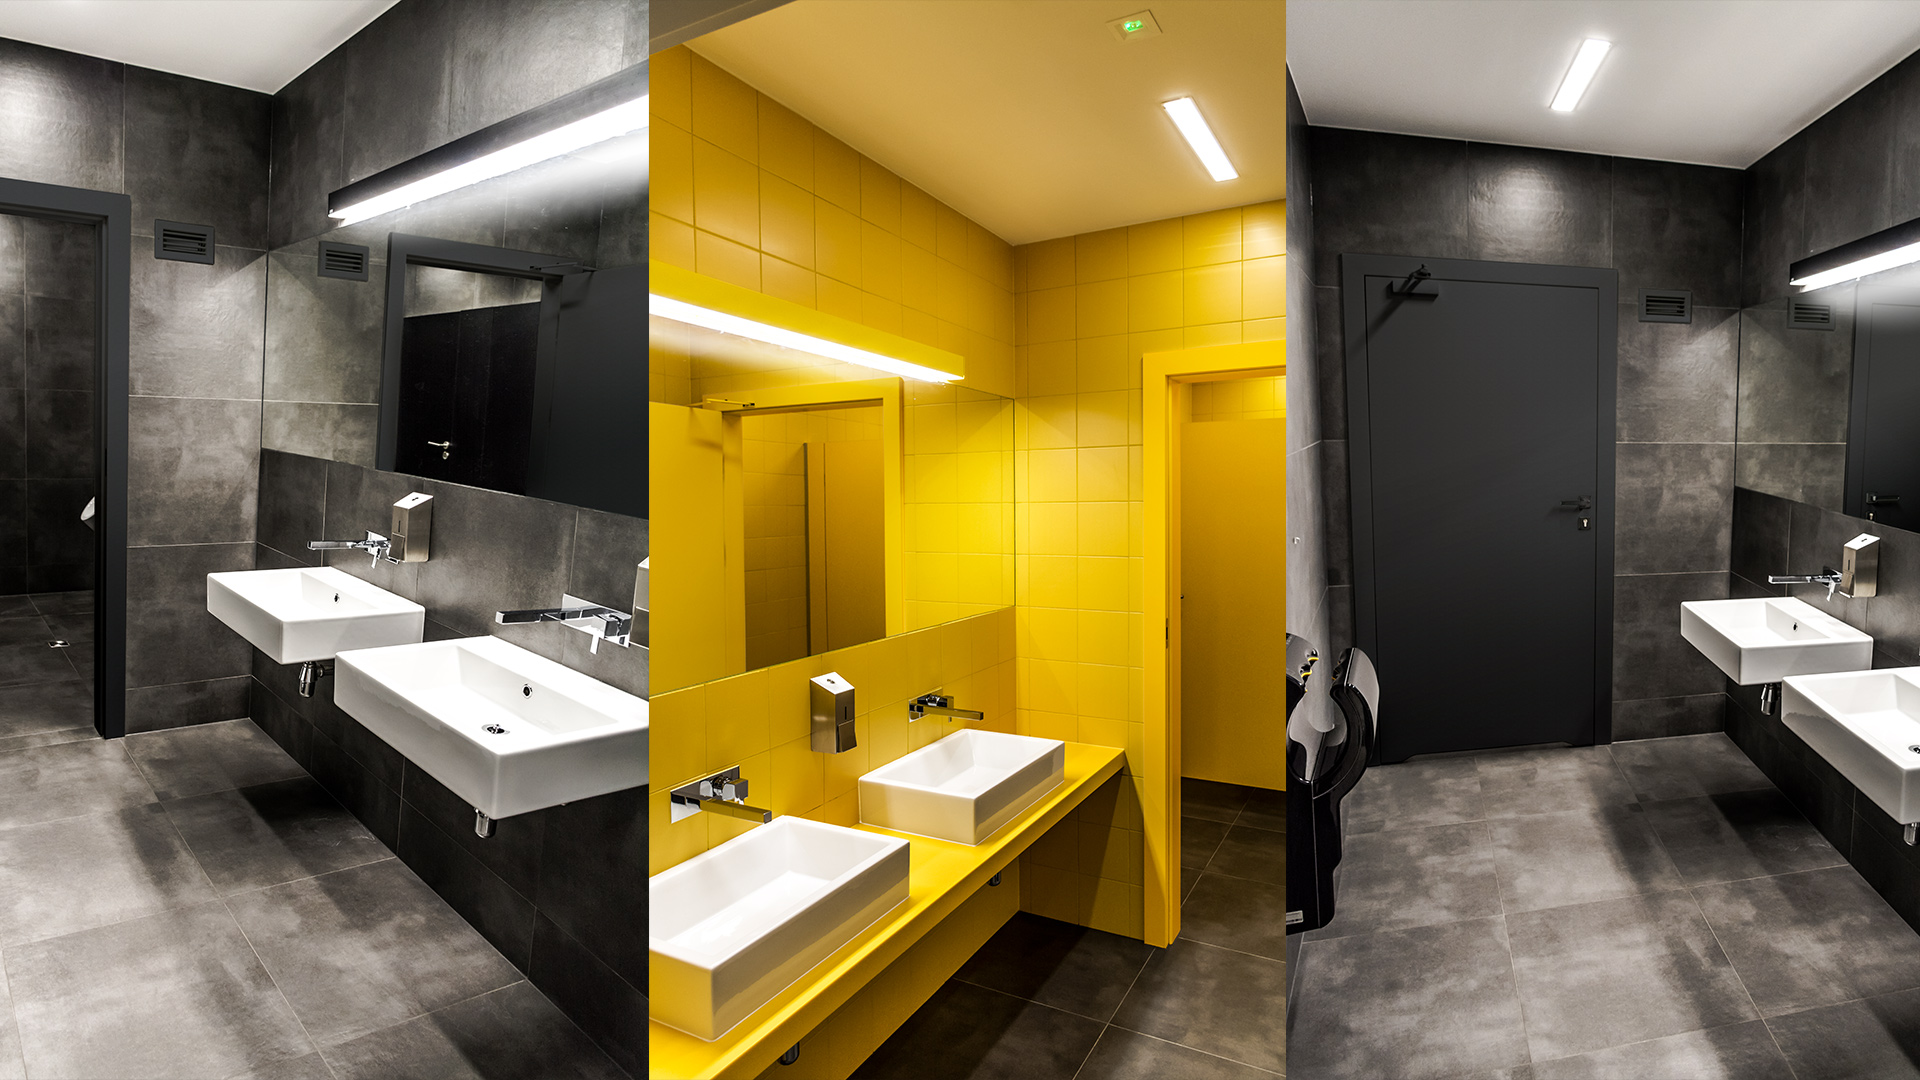 Damskie toalety dla pracowników wyróżnia energetyczna, żywa kolorystyka, a męskie – pełen elegancji powściągliwy grafit.